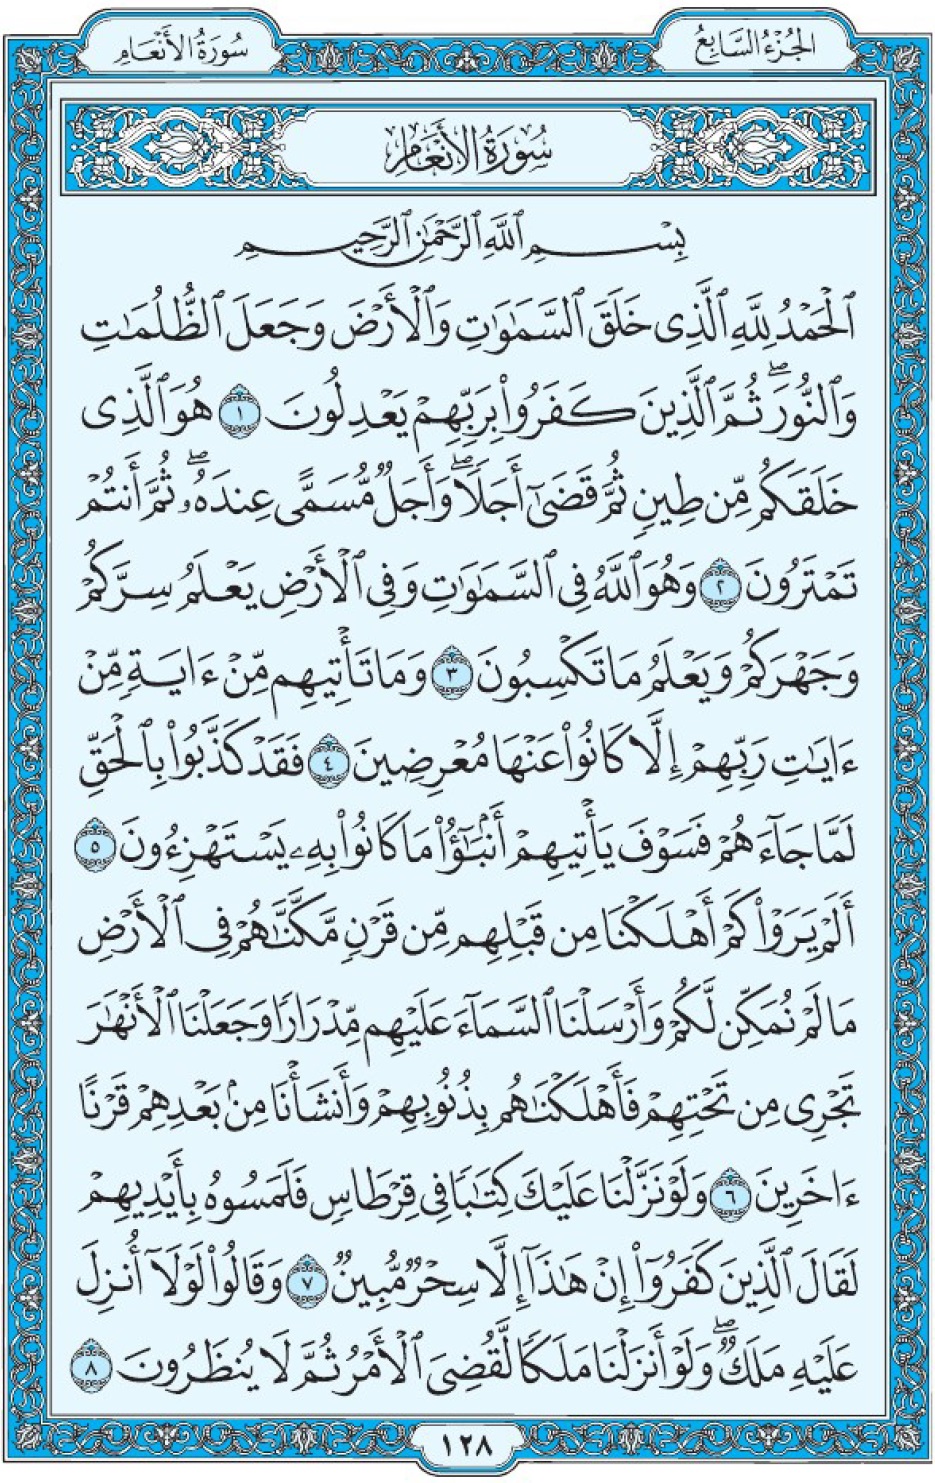 Коран Мединский мусхаф страница 128, сура 6 Аль-Ан‘ам سورة ٦ الأنعام 